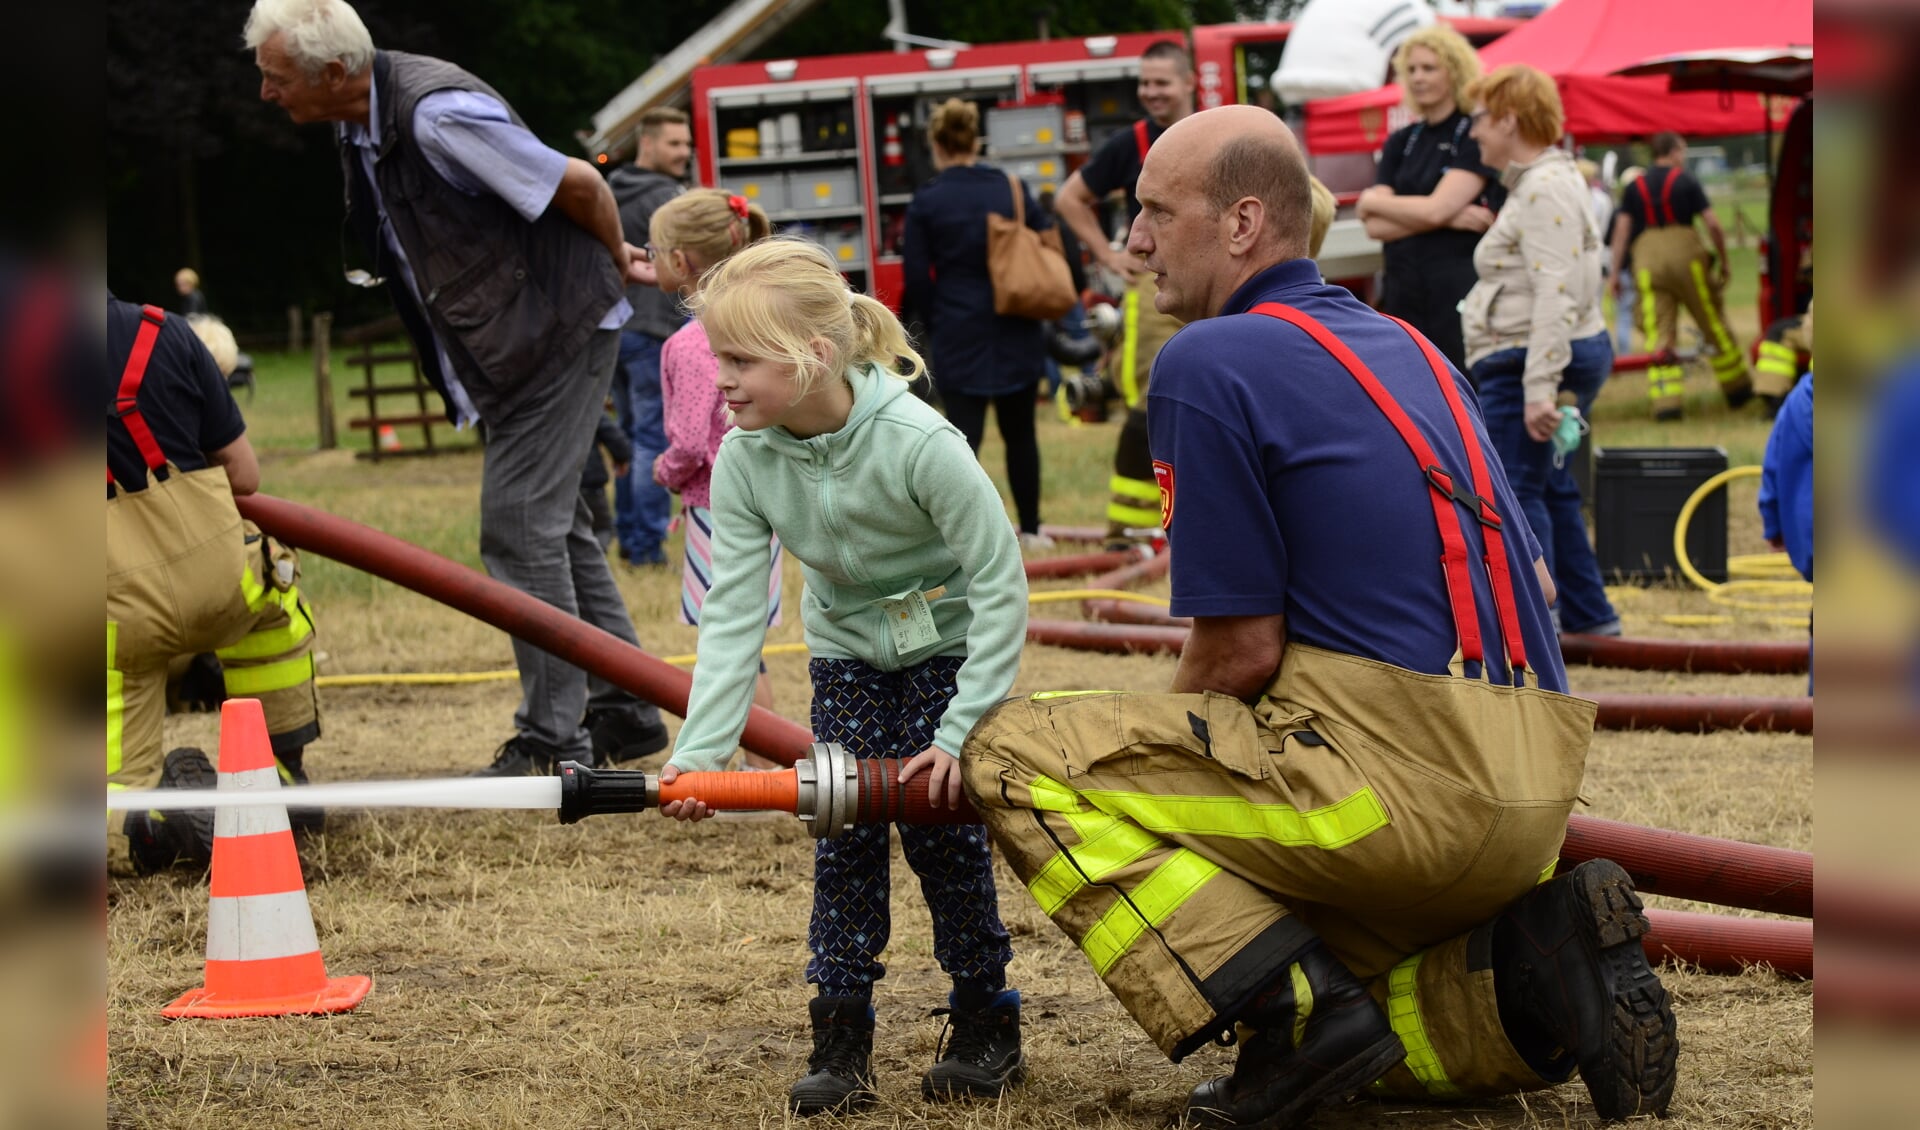 Ook de brandweer kreeg veel belangstelling van de kinderen. Foto: Achterhoekfoto.nl/Paul Harmelink